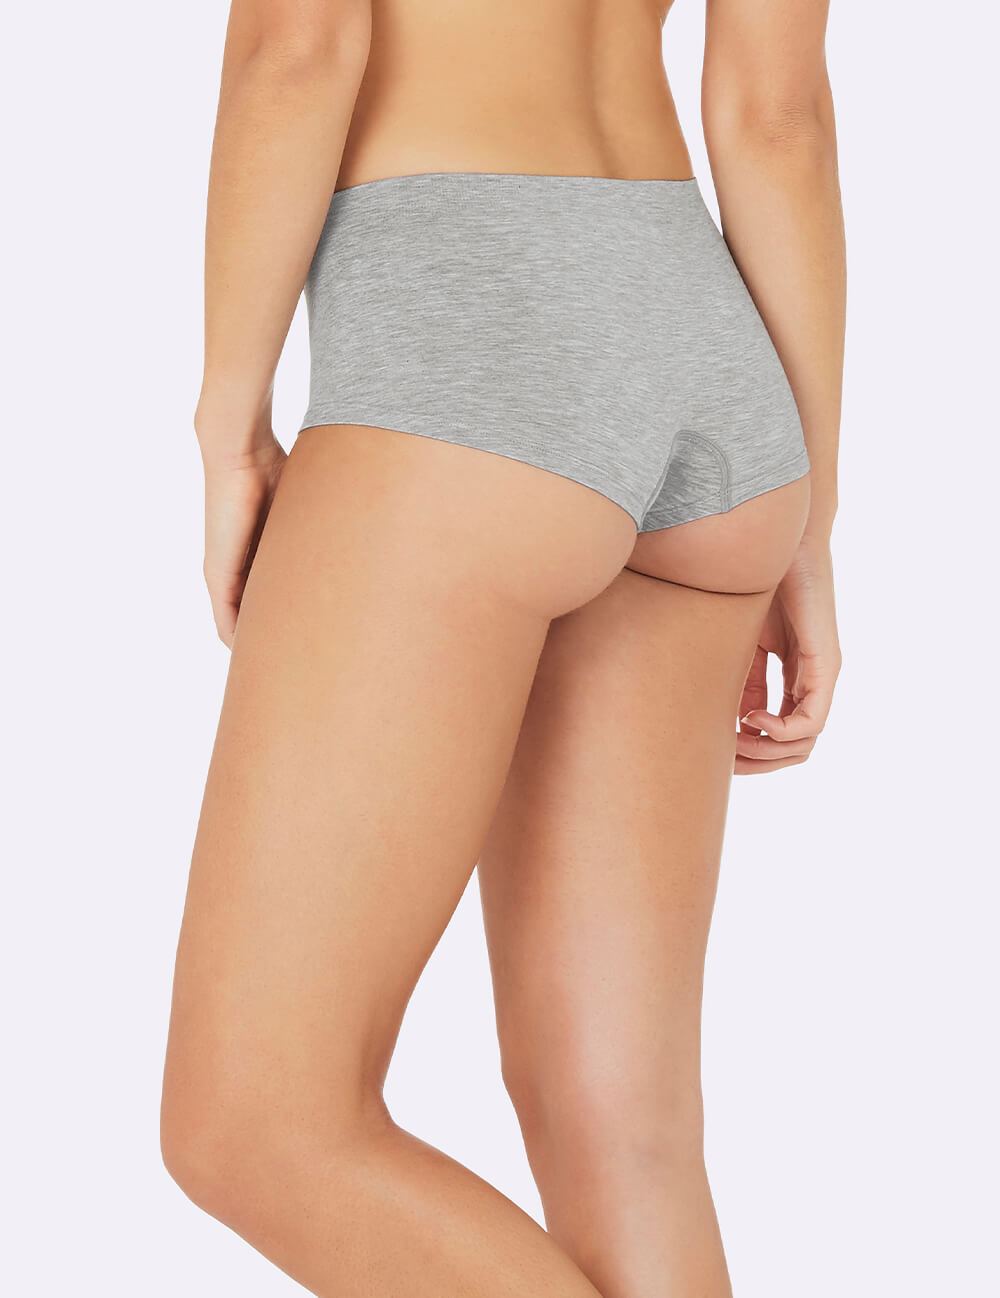 Buy Branded Boyleg Panty For Women online